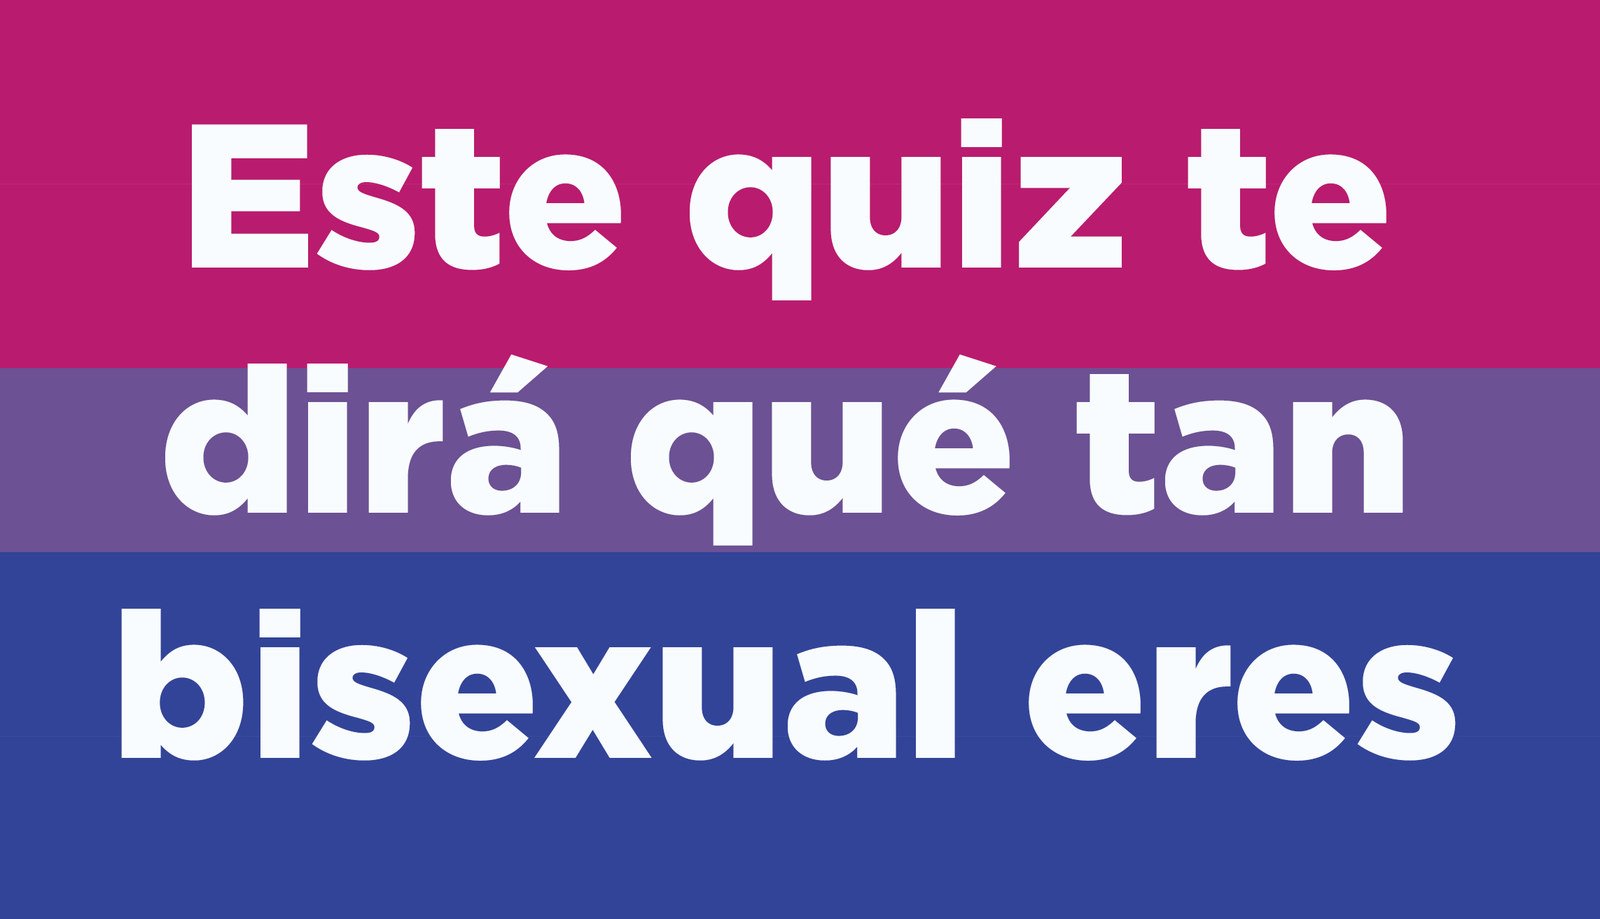 Am i bisexual quiz